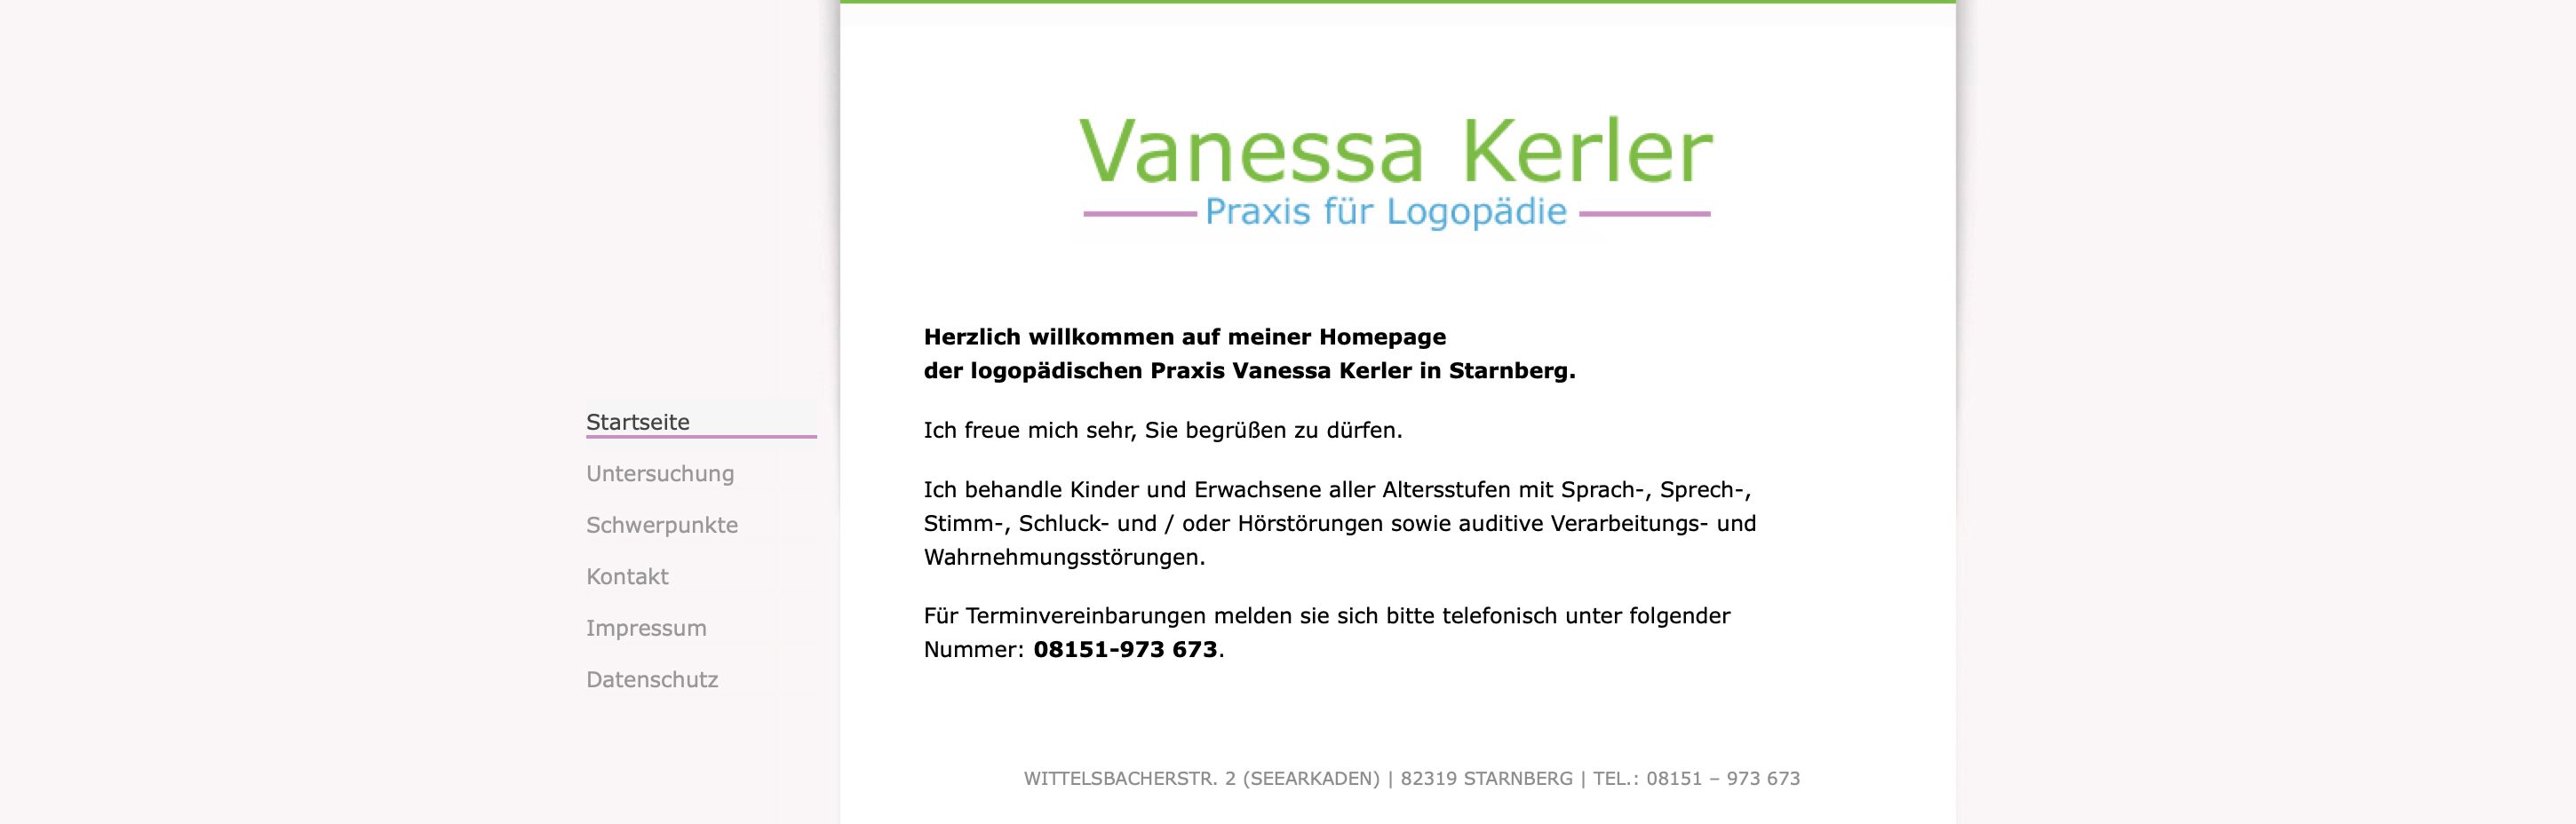 Logopädische Praxis Vanessa Kerler